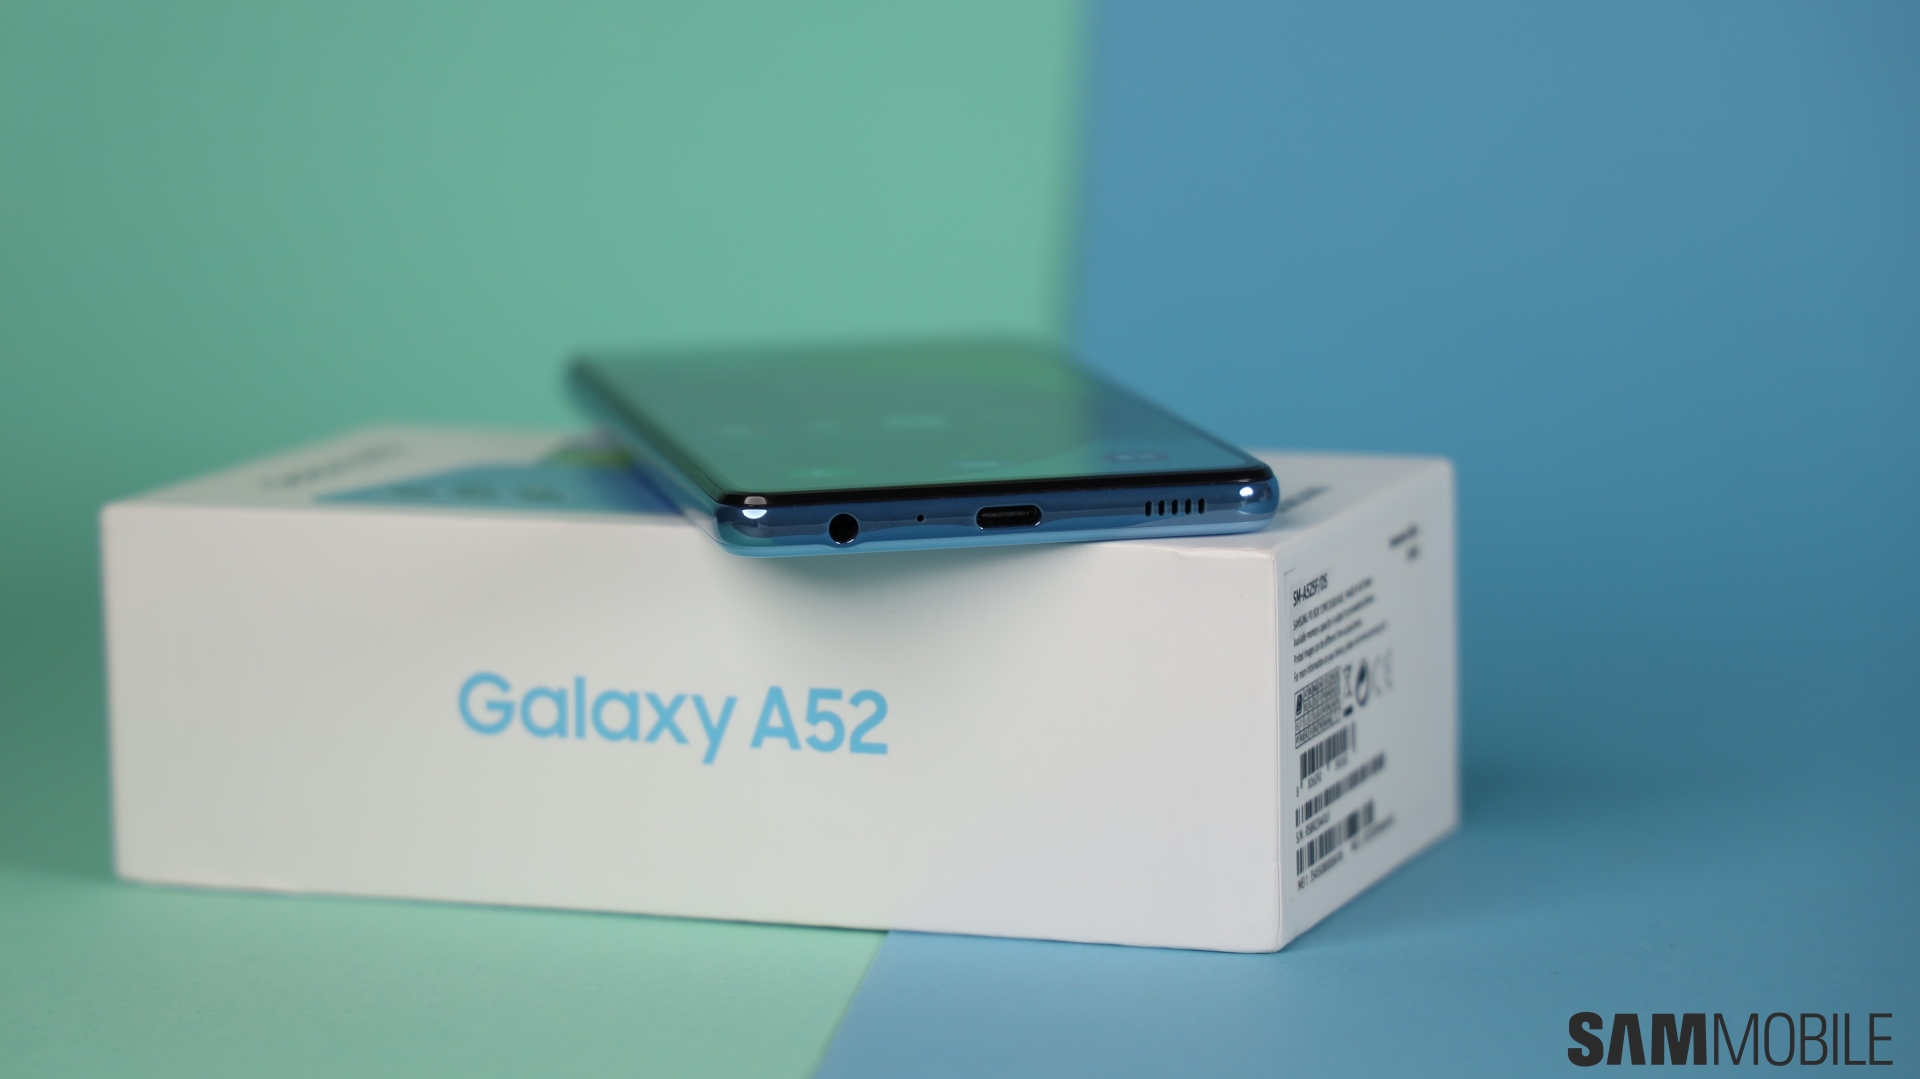 Samsung Galaxy A52 long-term review: Regular phone